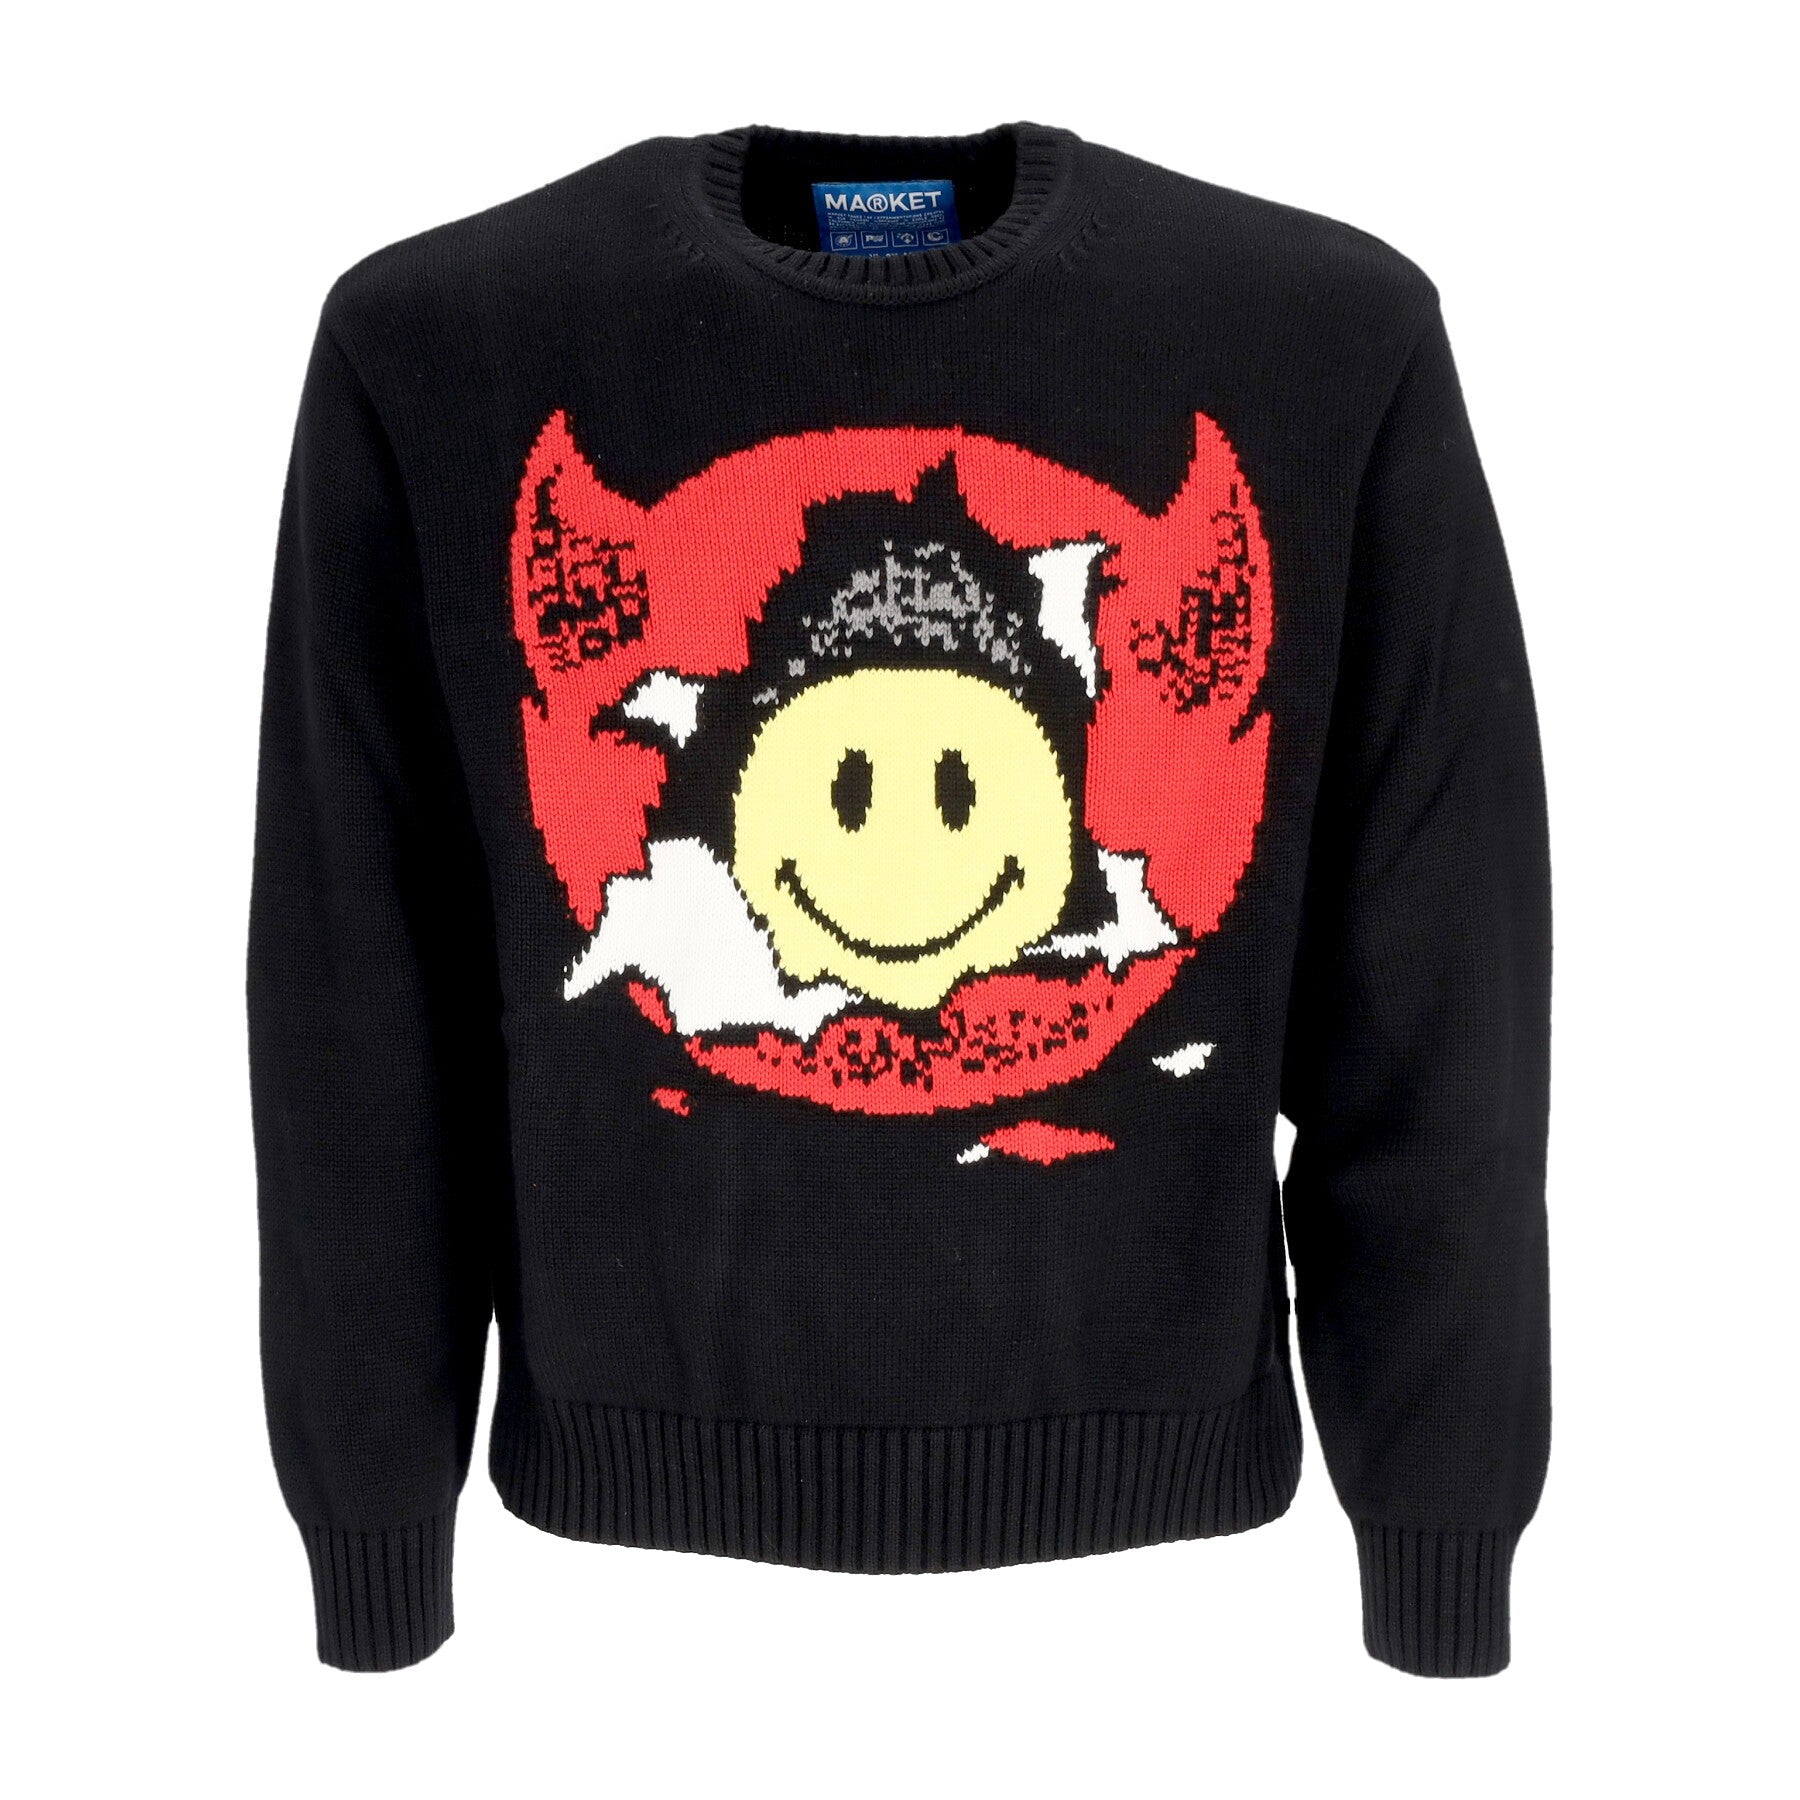 Market, Maglione Leggero Uomo Smiley Inner Peace Sweater, Black